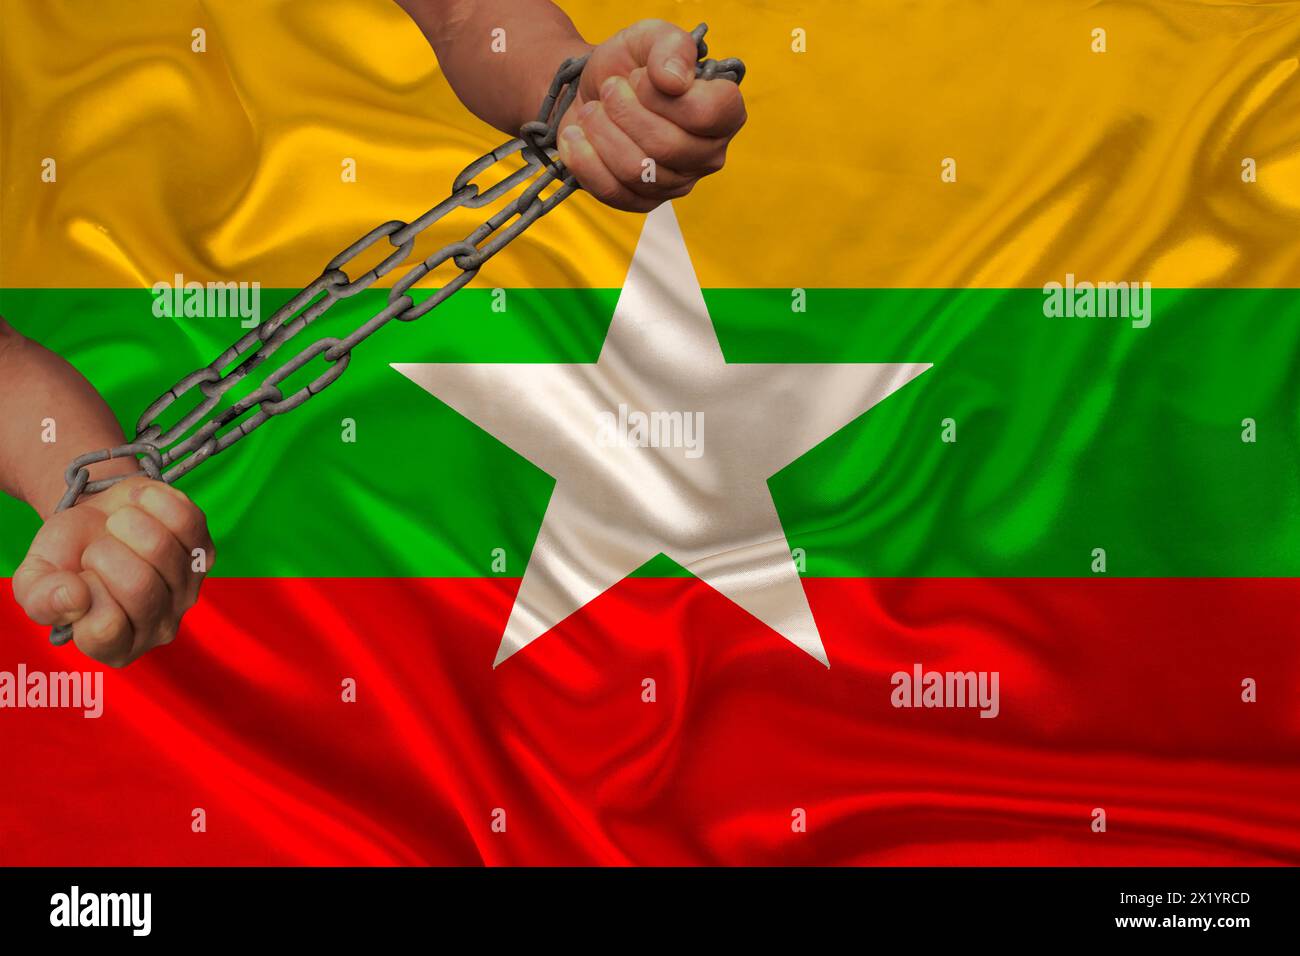 Les mains masculines brisent la chaîne de fer, symbole de la tyrannie, protestation sur fond de drapeau national du Myanmar, concept de répression politique, arrestation, m Banque D'Images